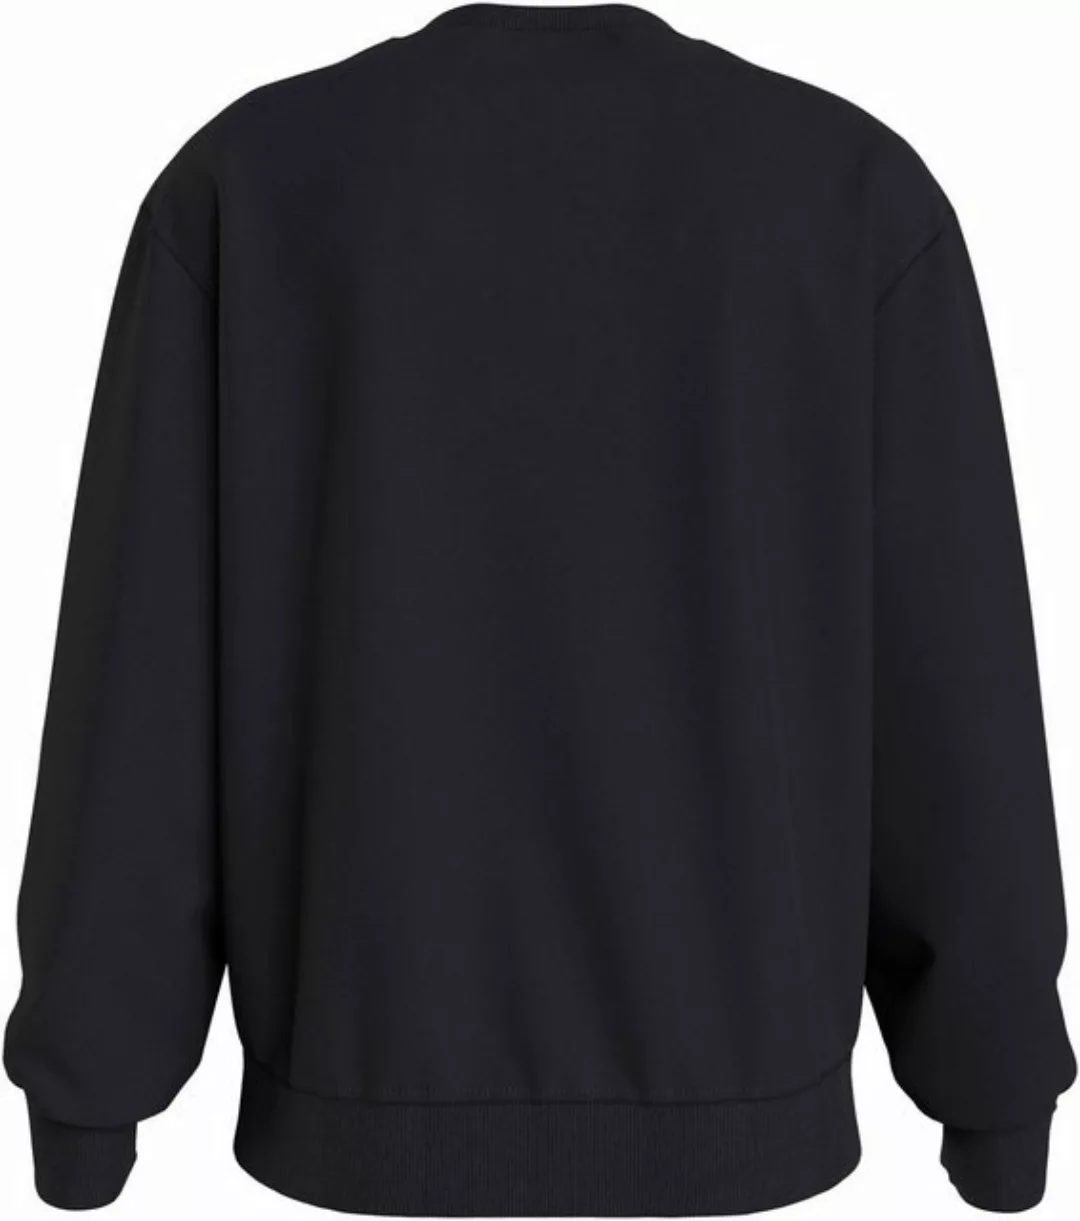 Calvin Klein Jeans Sweatshirt MONOLOGO STENCIL CREW NECK günstig online kaufen